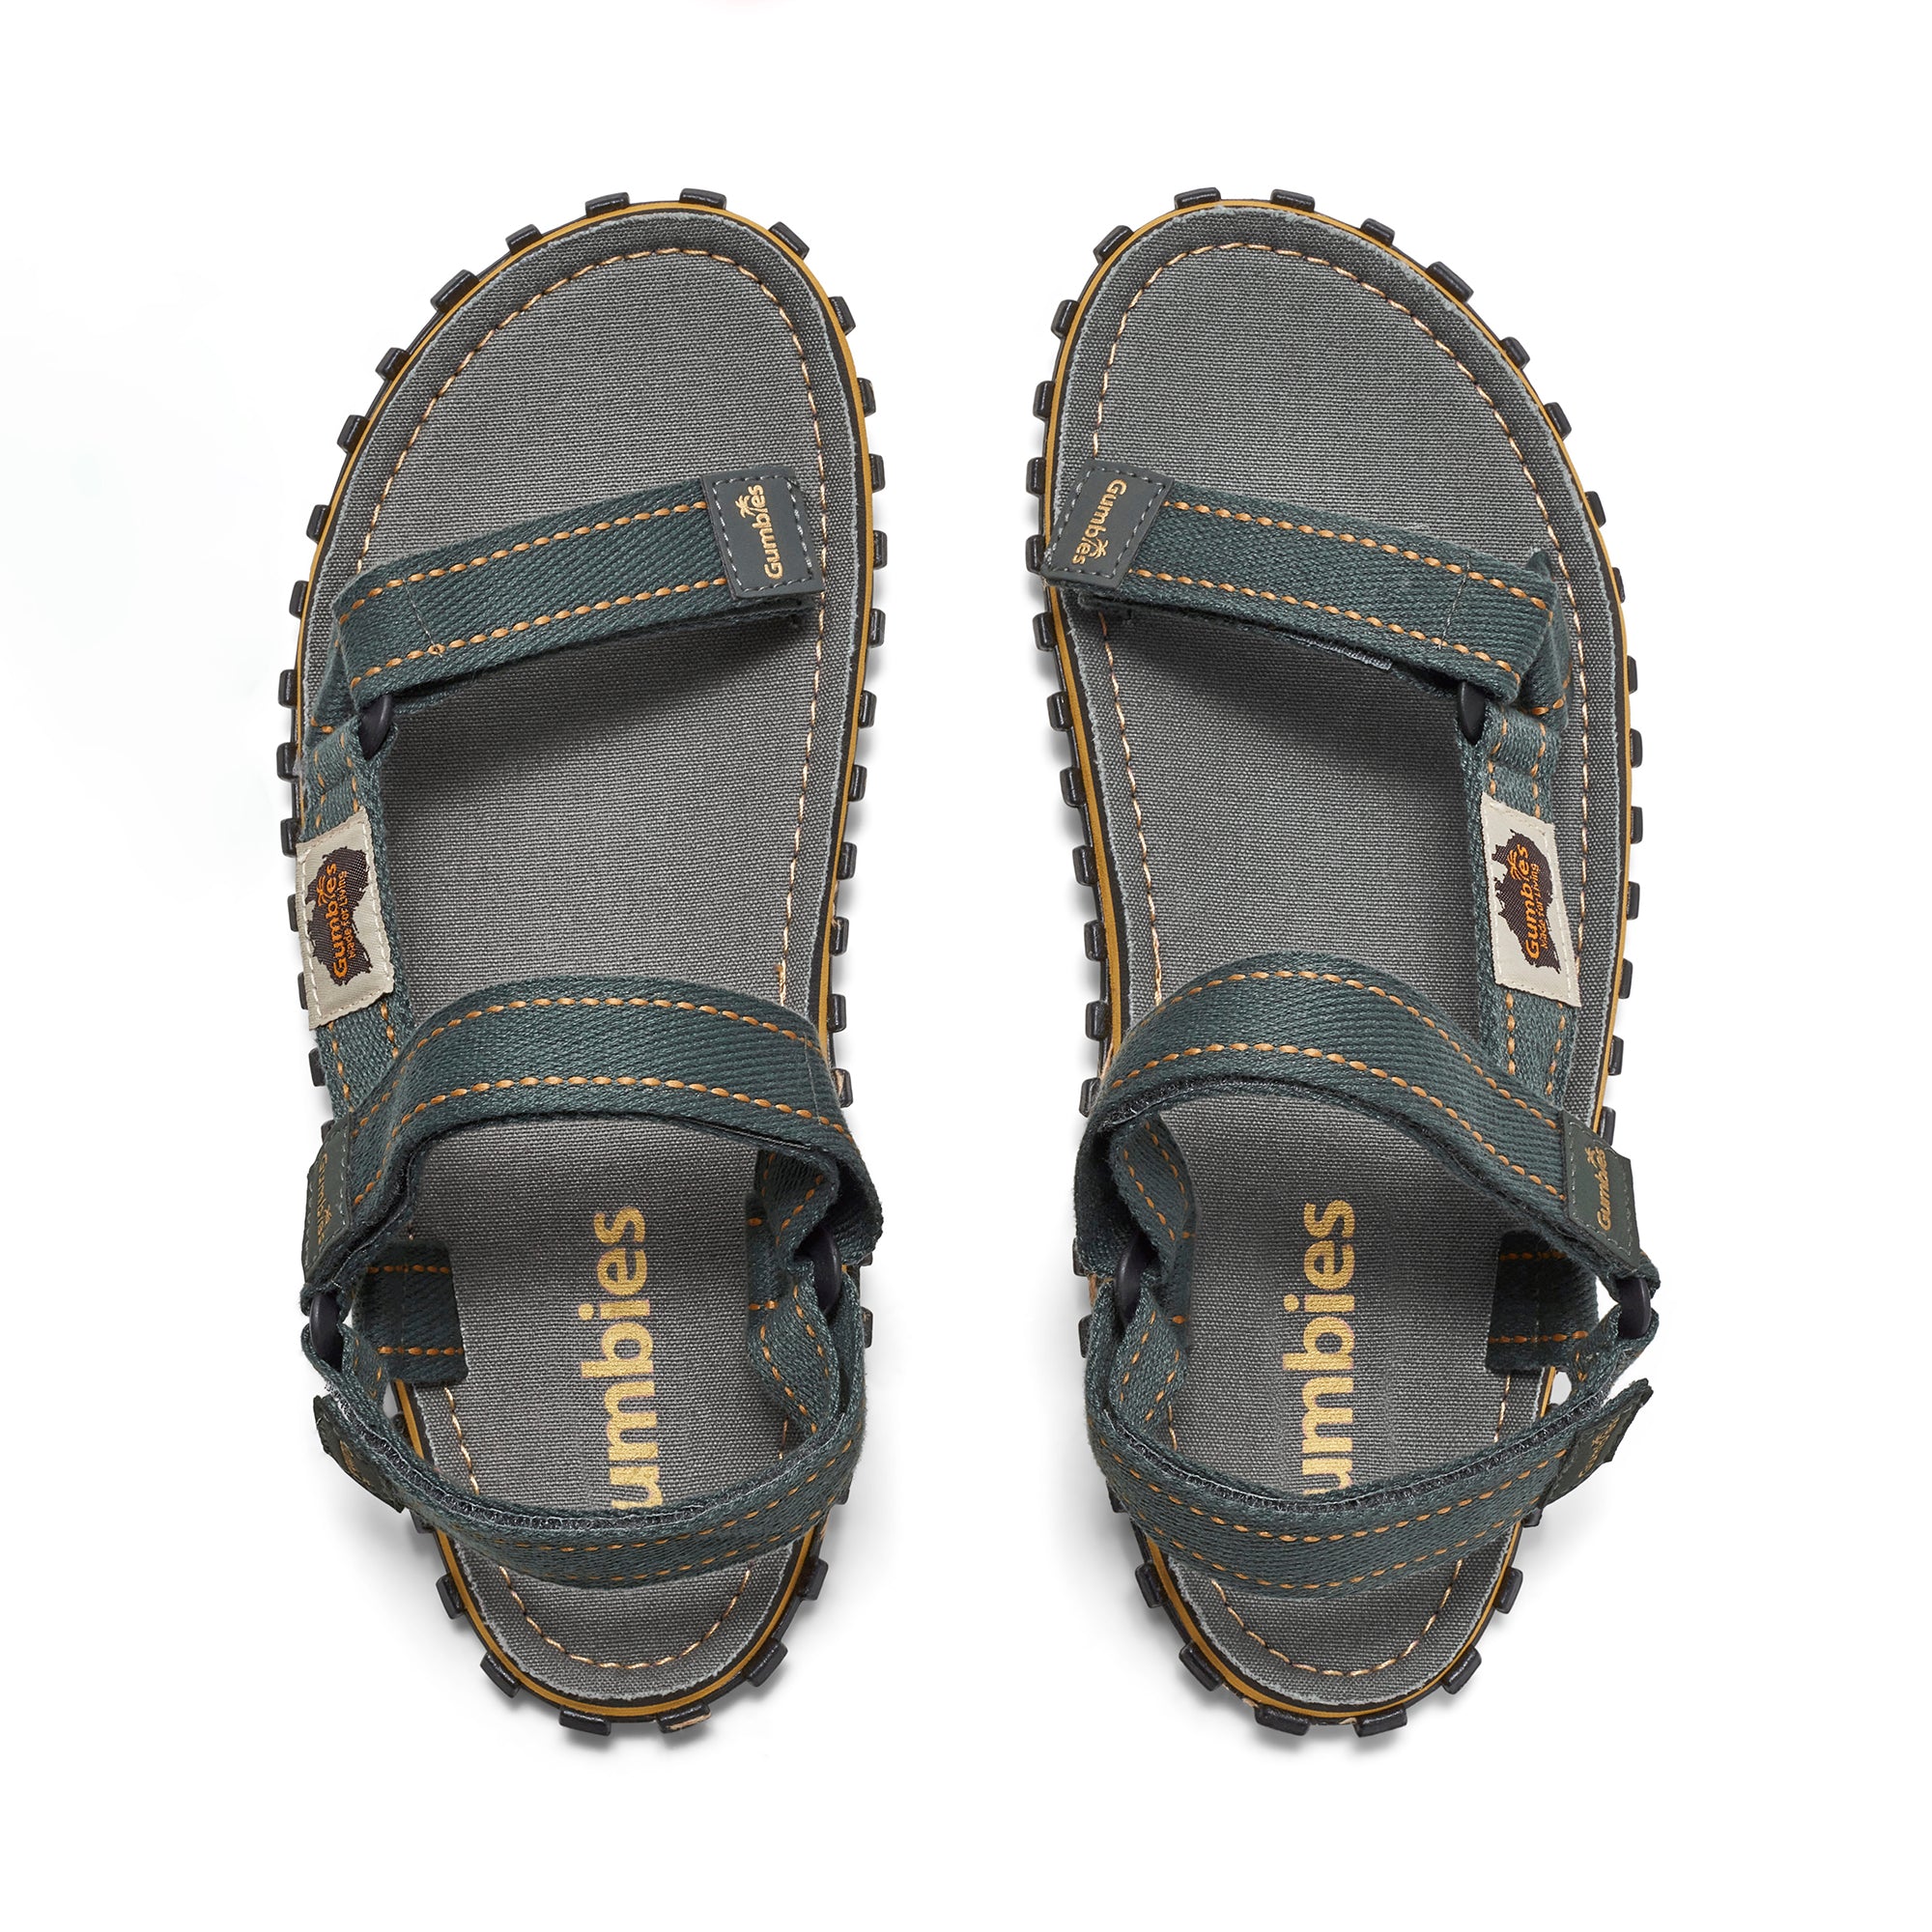 Tracker Sandals - Men's - Grey